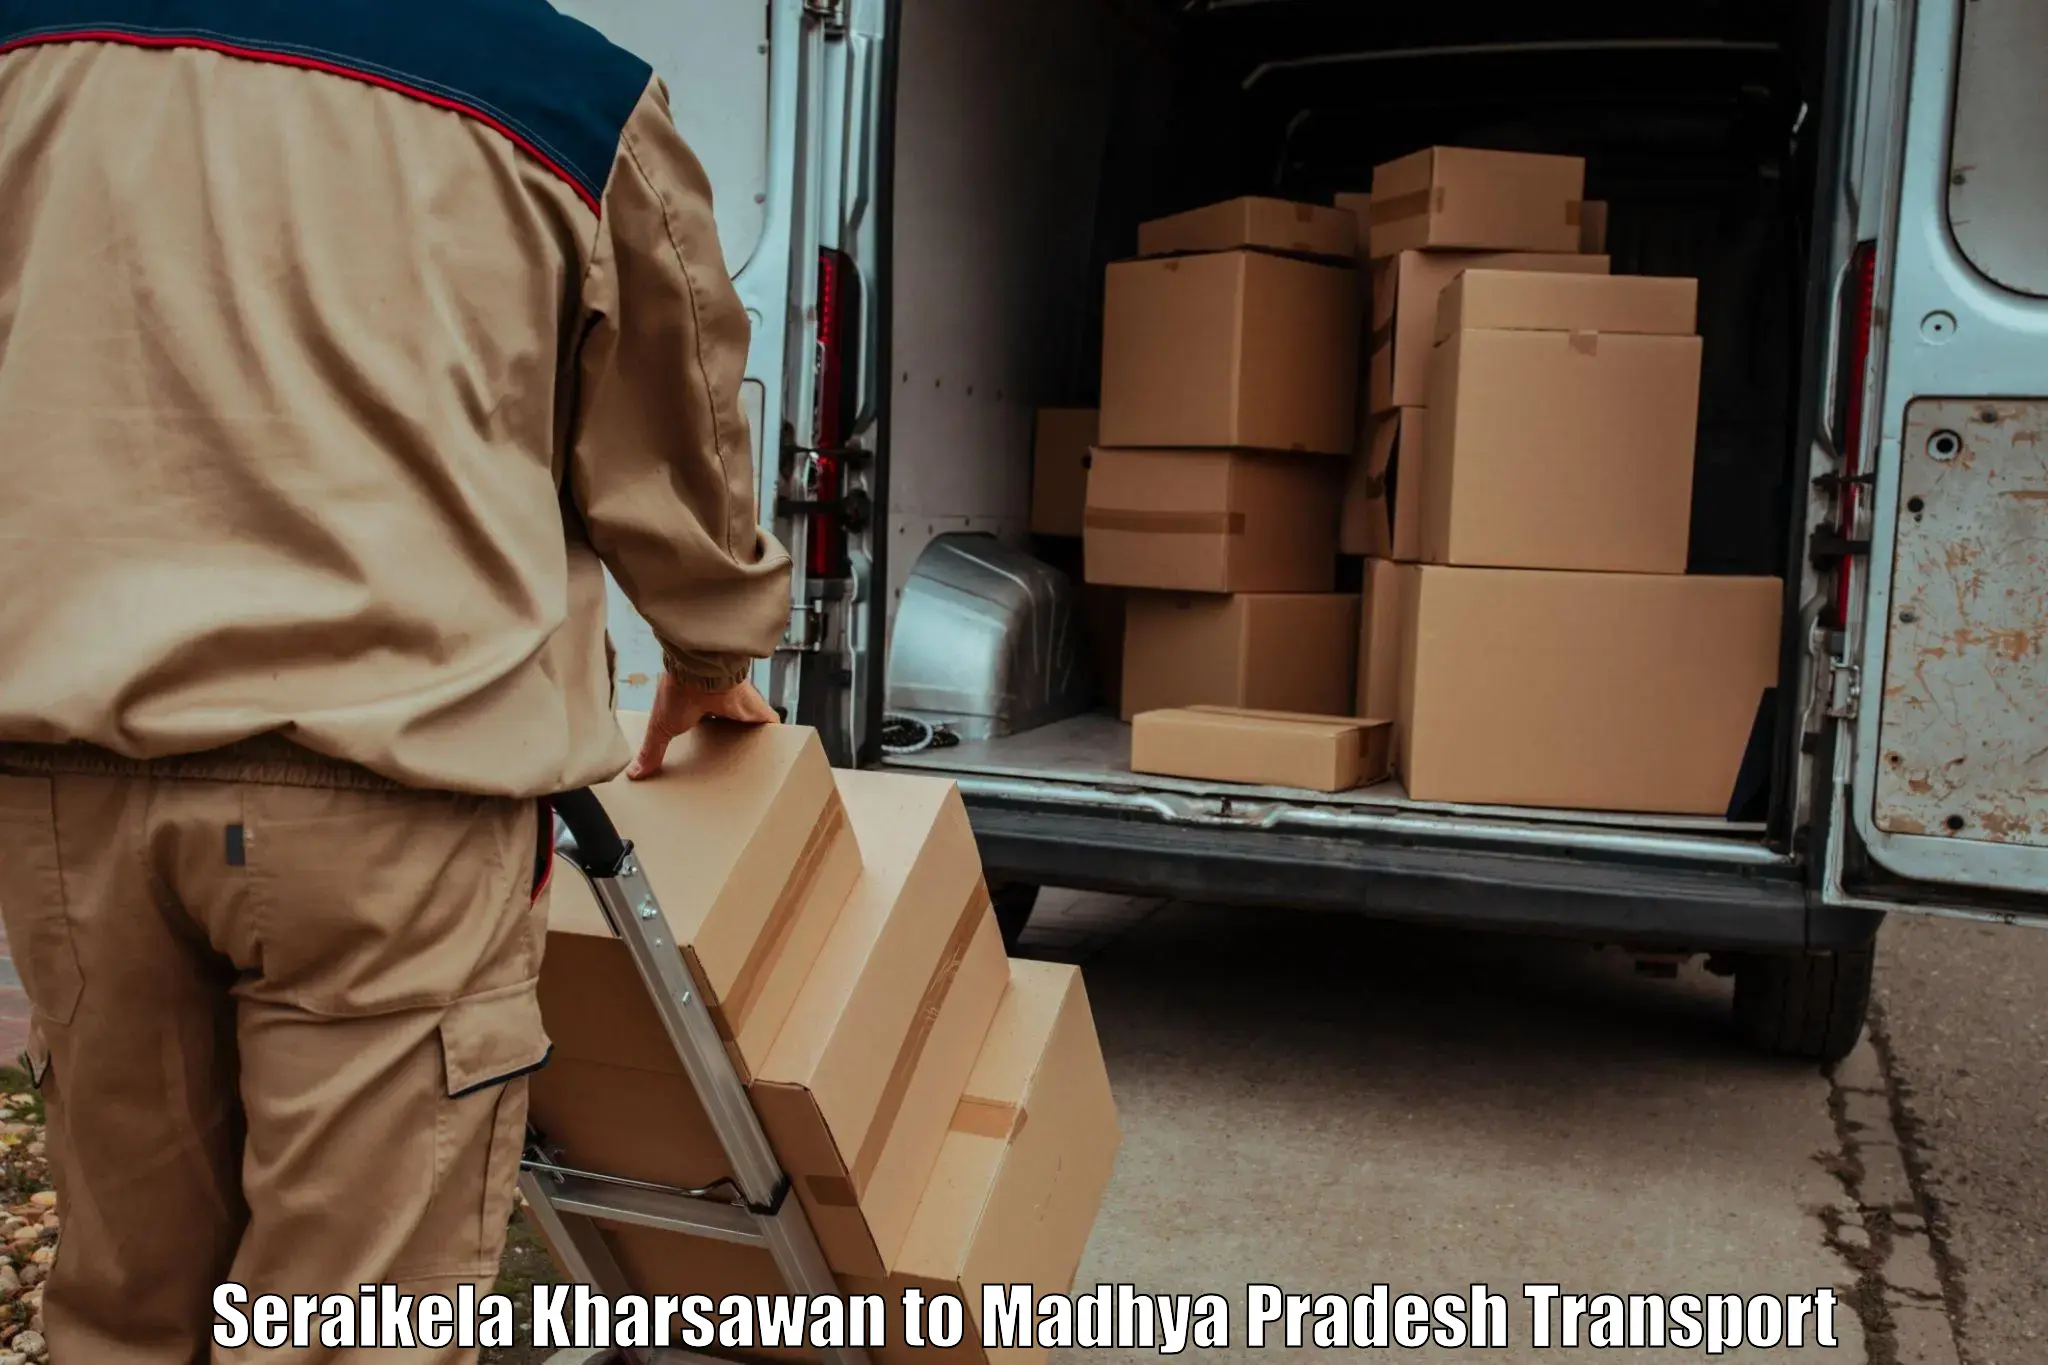 Container transport service Seraikela Kharsawan to Mundi